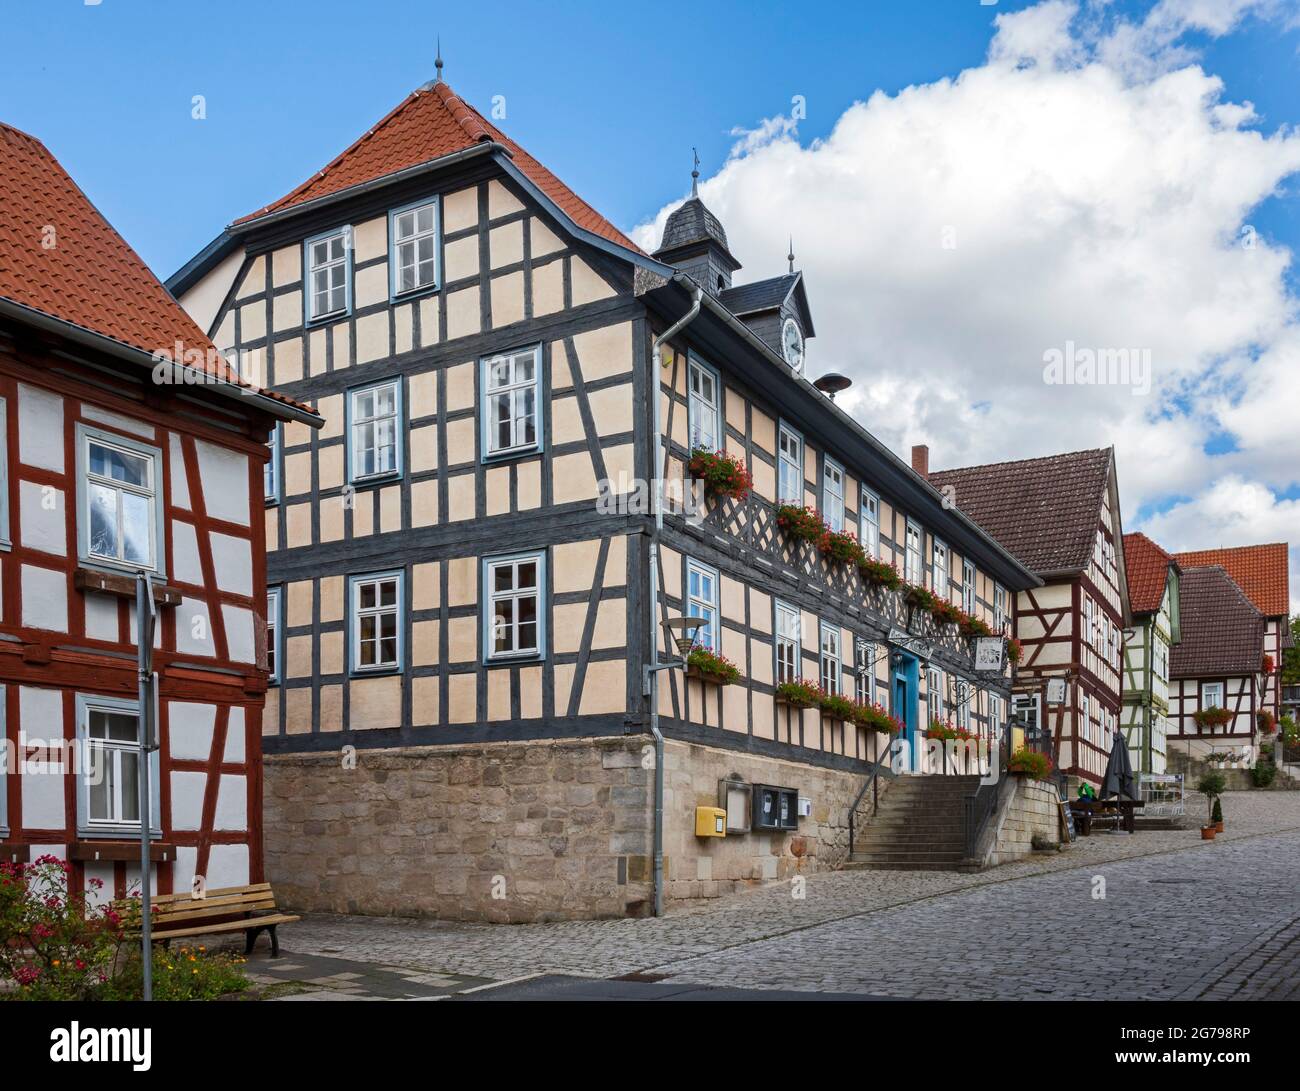 Ummerstadt es (2019) la ciudad más pequeña de Turingia. El histórico casco antiguo de Ummerstadt, en el que hay muchas casas de entramado de madera, es un edificio catalogado. La plaza del mercado con el histórico ayuntamiento, que ahora se utiliza como restaurante, es particularmente digno de ver. Foto de stock